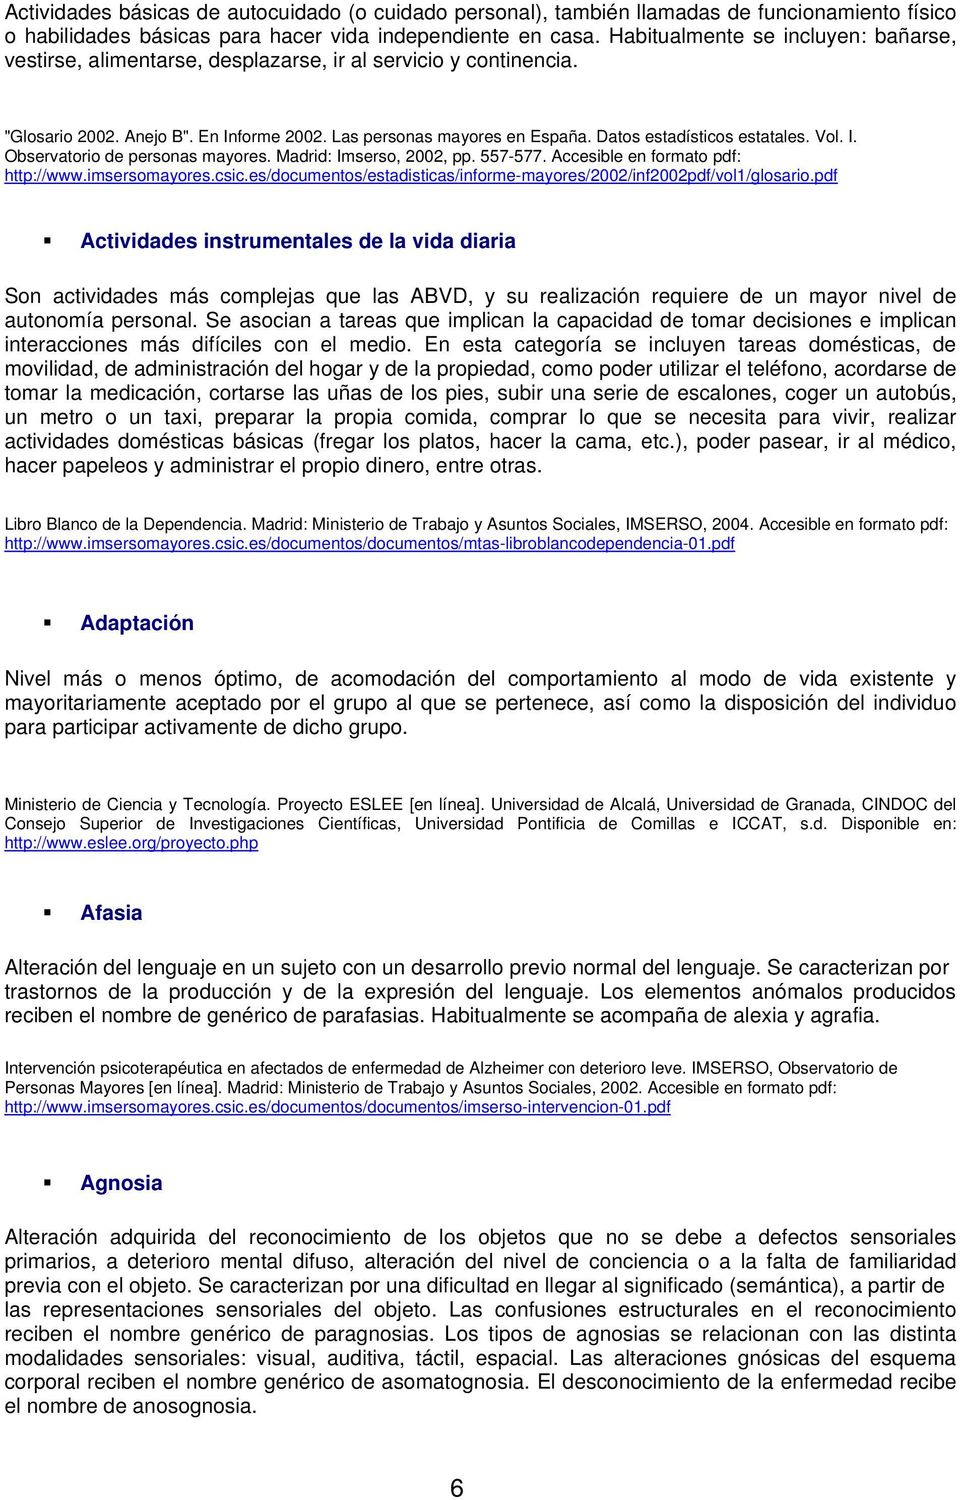 Datos estadísticos estatales. Vol. I. Observatorio de personas mayores. Madrid: Imserso, 2002, pp. 557-577. Accesible en formato pdf: http://www.imsersomayores.csic.